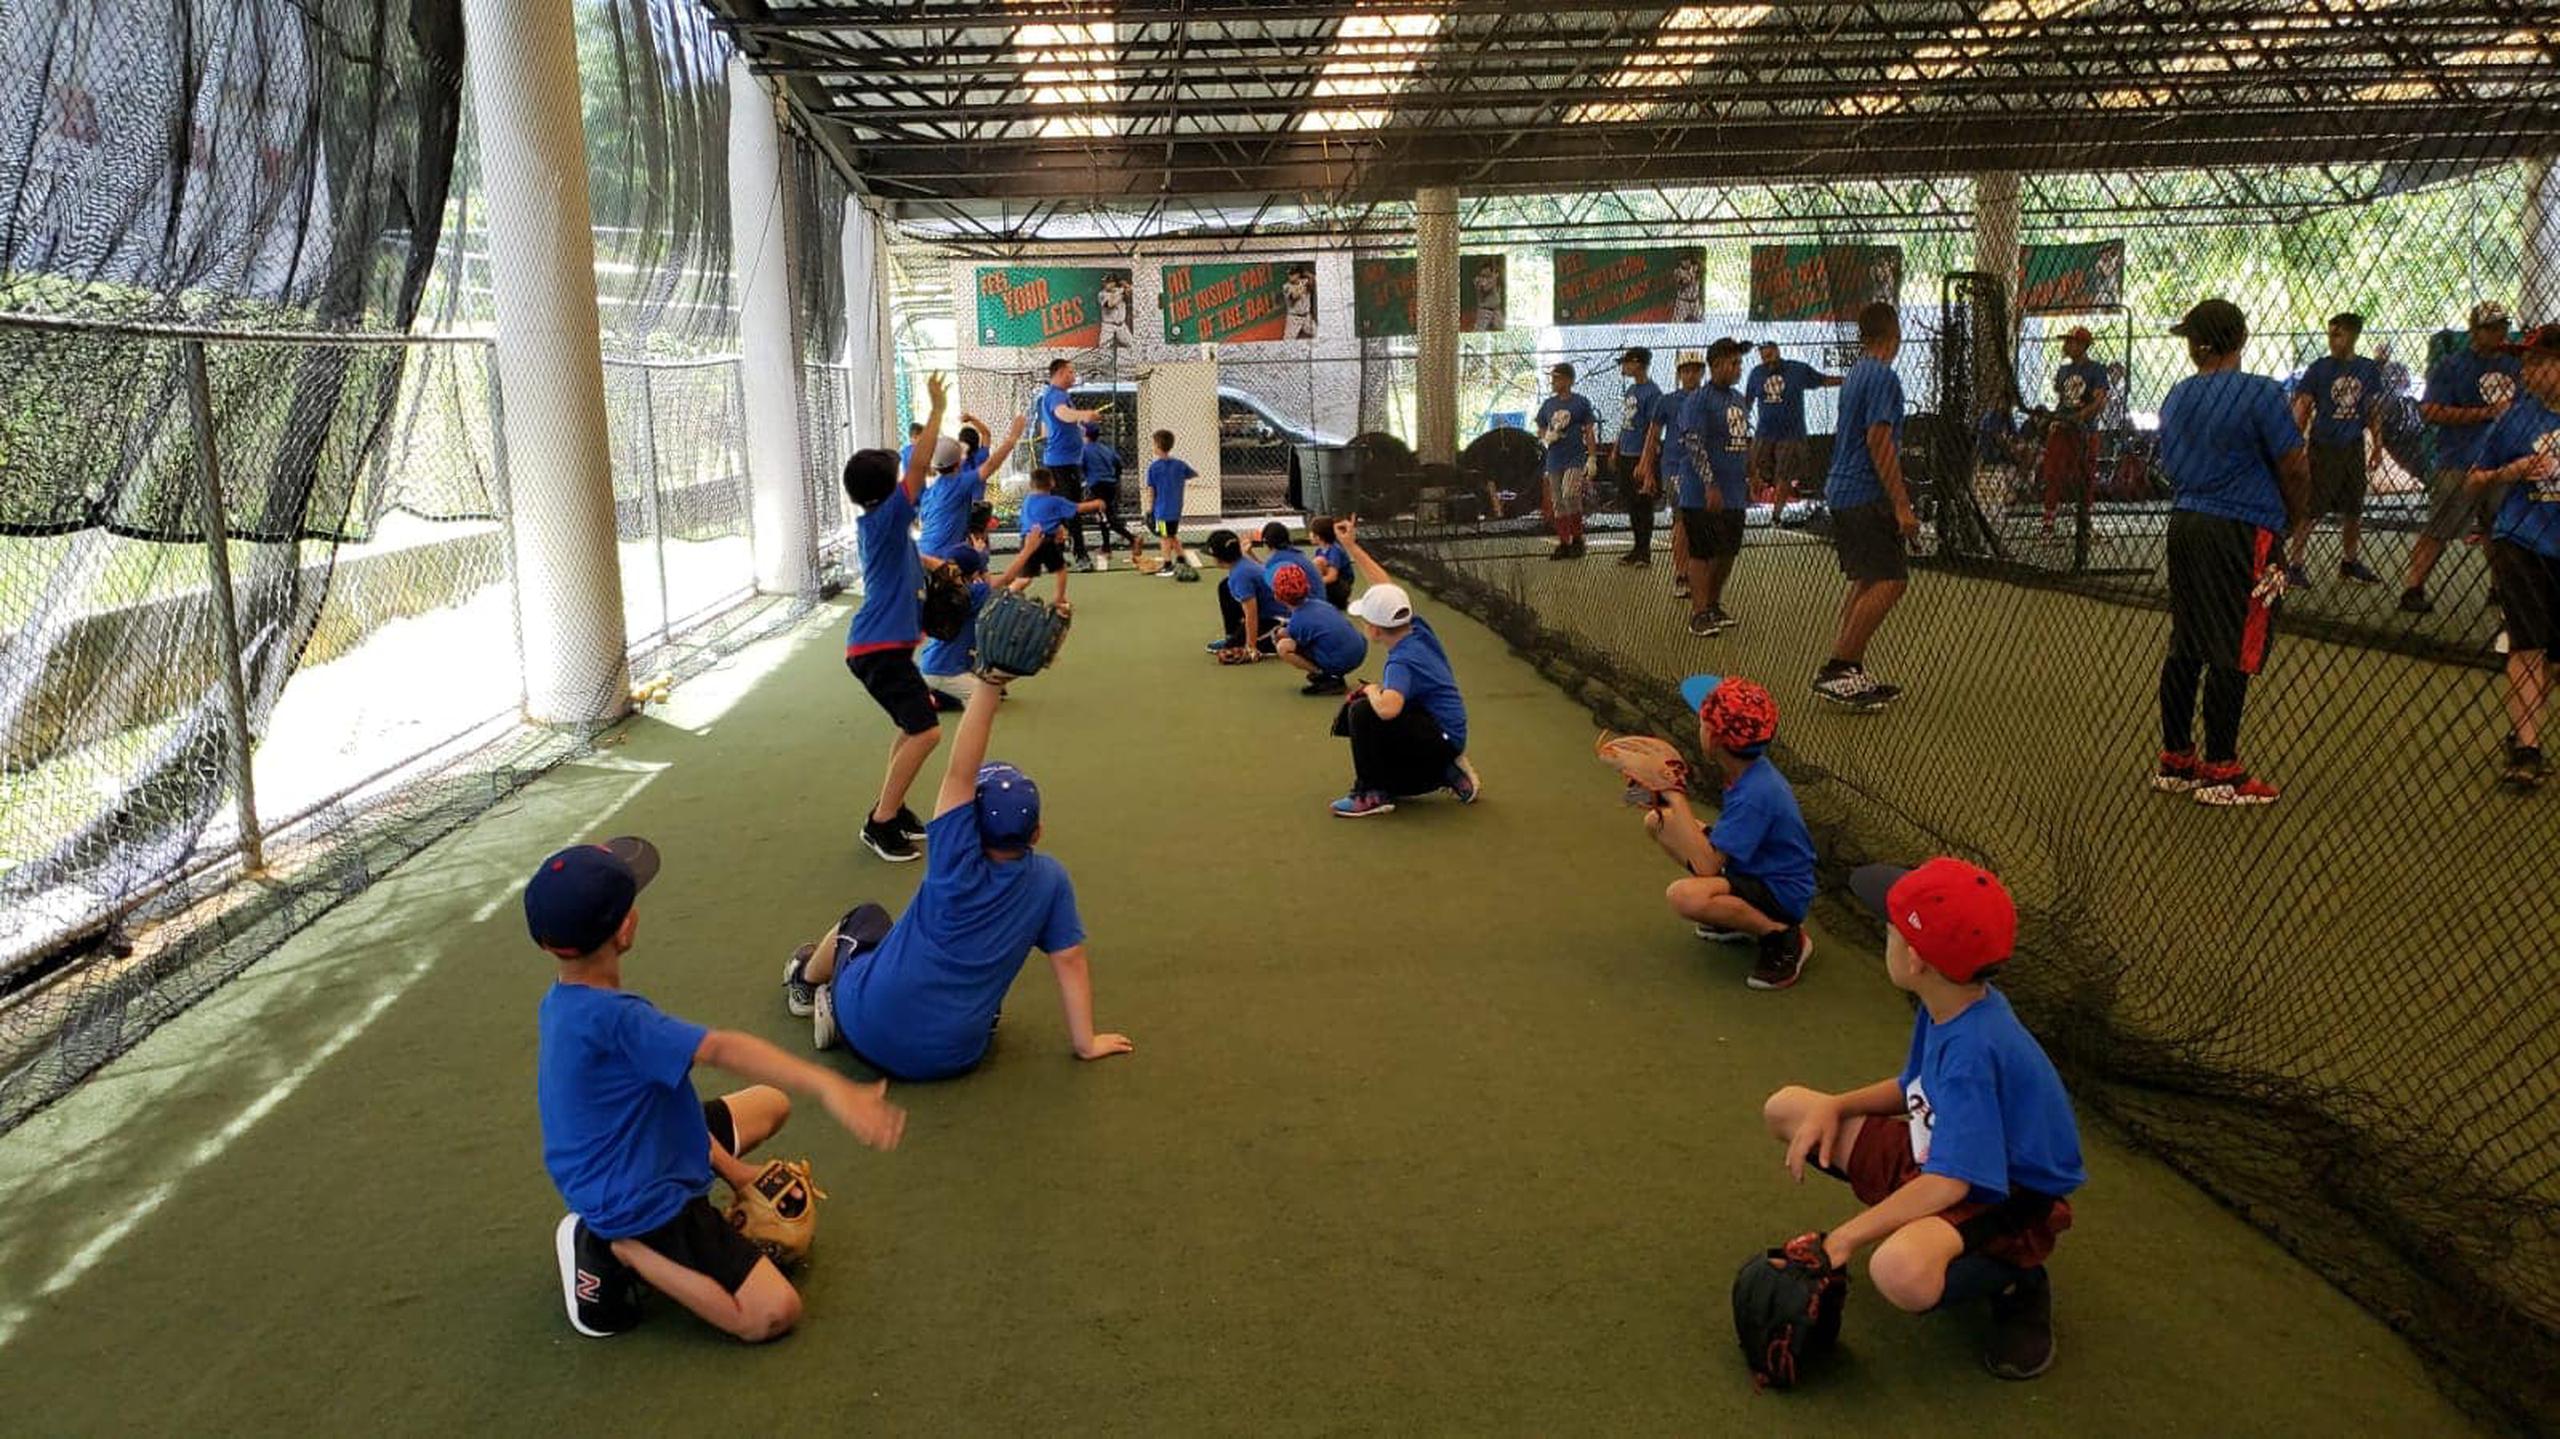 Niños, niñas y jóvenes desde los nueve hasta los 17 años disfrutarán de varias semanas repletas de diversión y aprendizaje especializado en el béisbol.